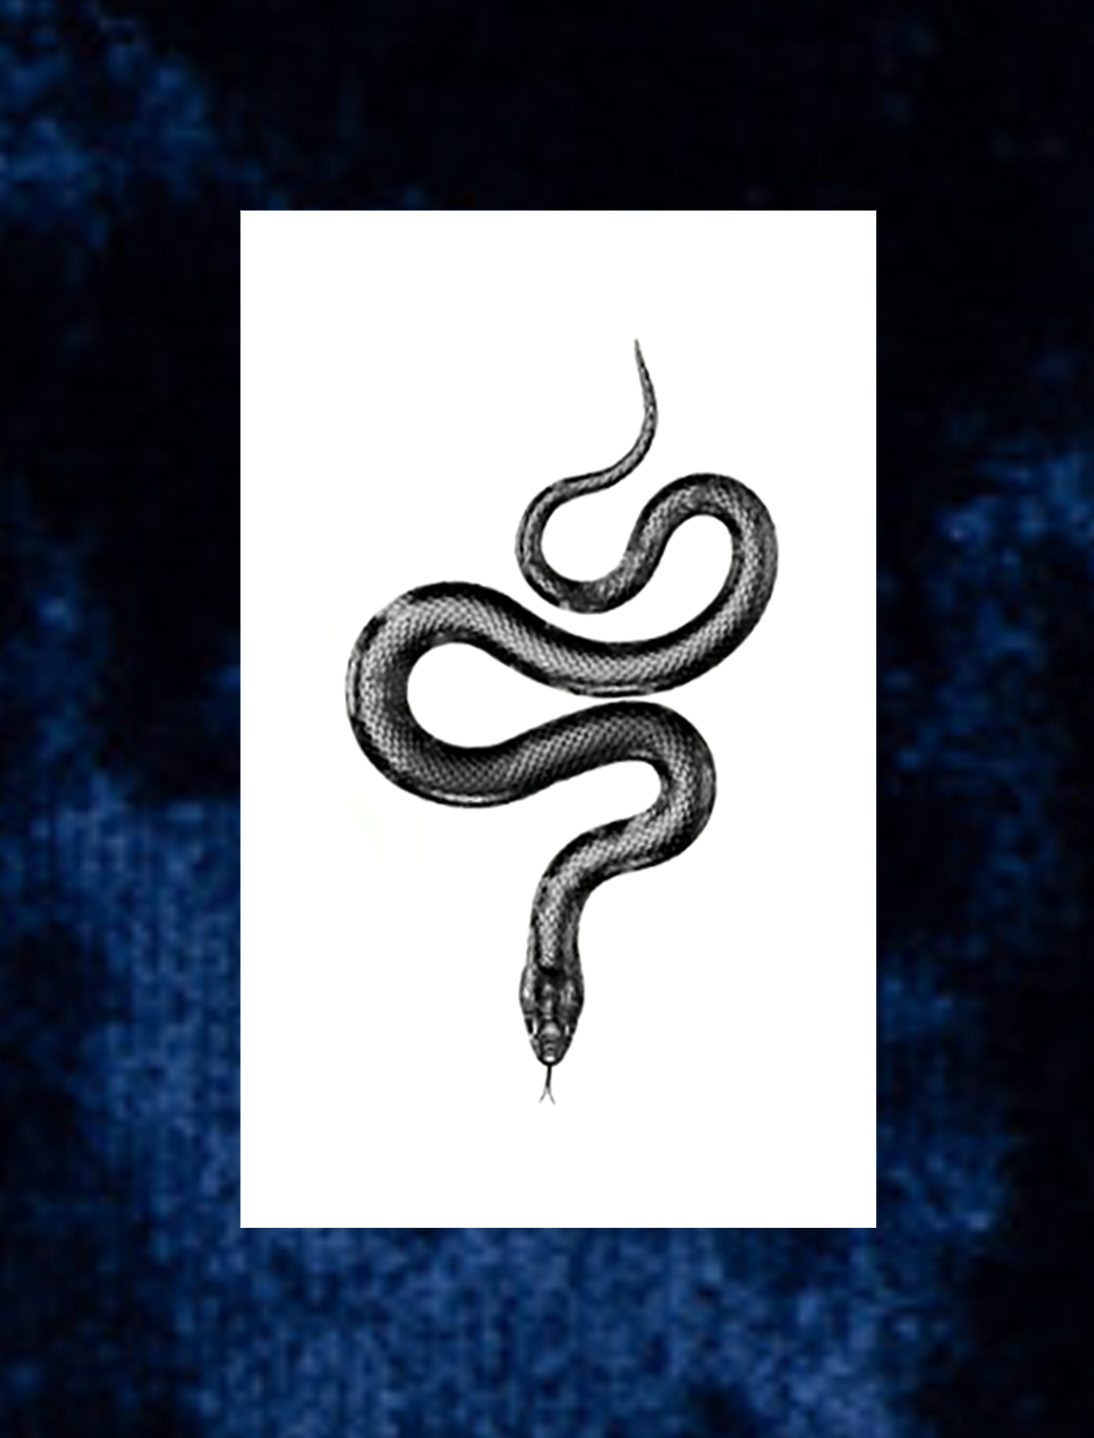 Snake tattoo ideas by morning-star1 on DeviantArt